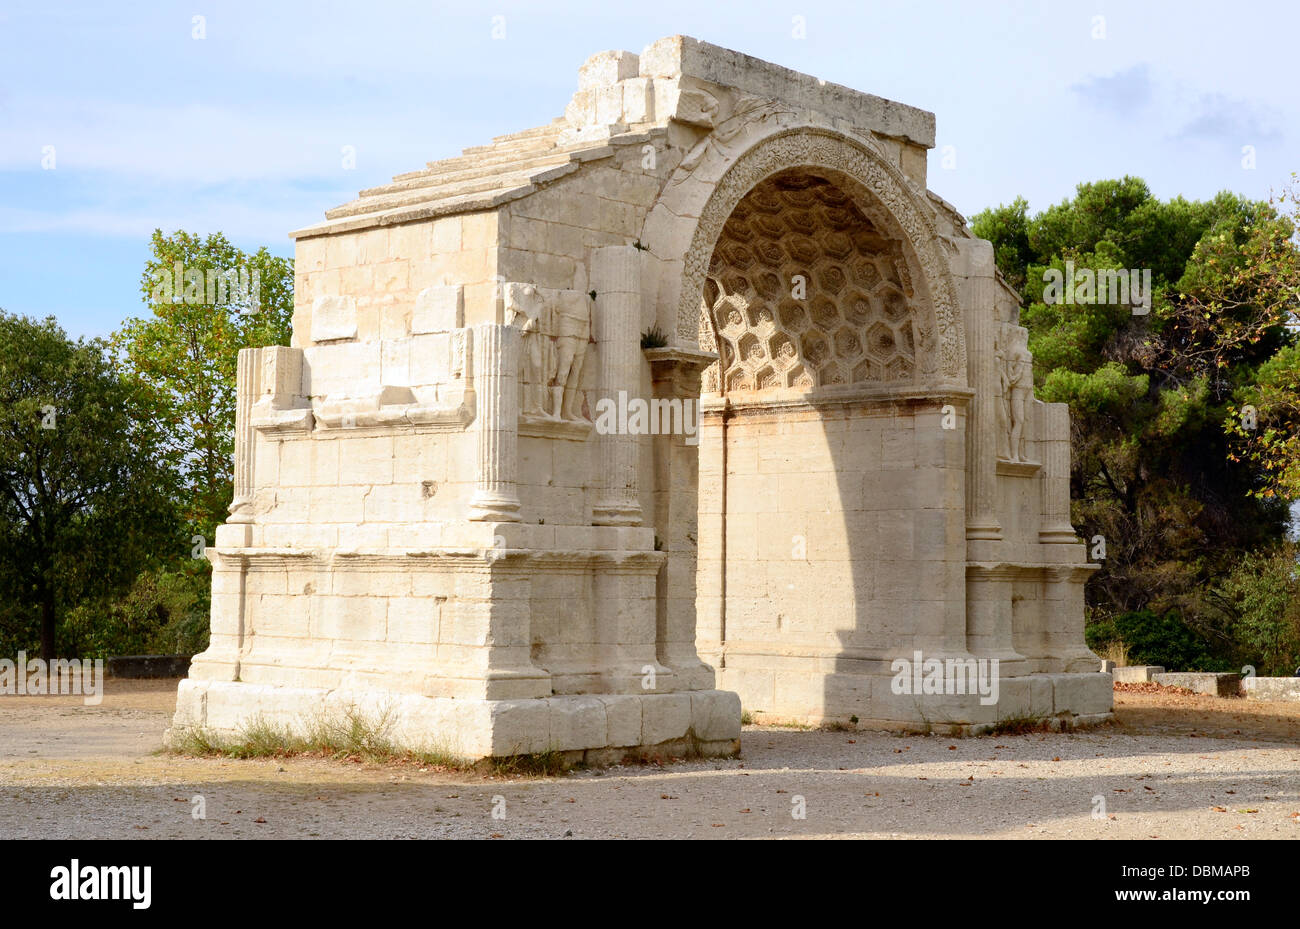 Glanum era un oppidum o città fortificata nel presente giorno Provence, fondata da un popolo Celto-Ligurian chiamato Salyes nel VI secolo A.C. Foto Stock